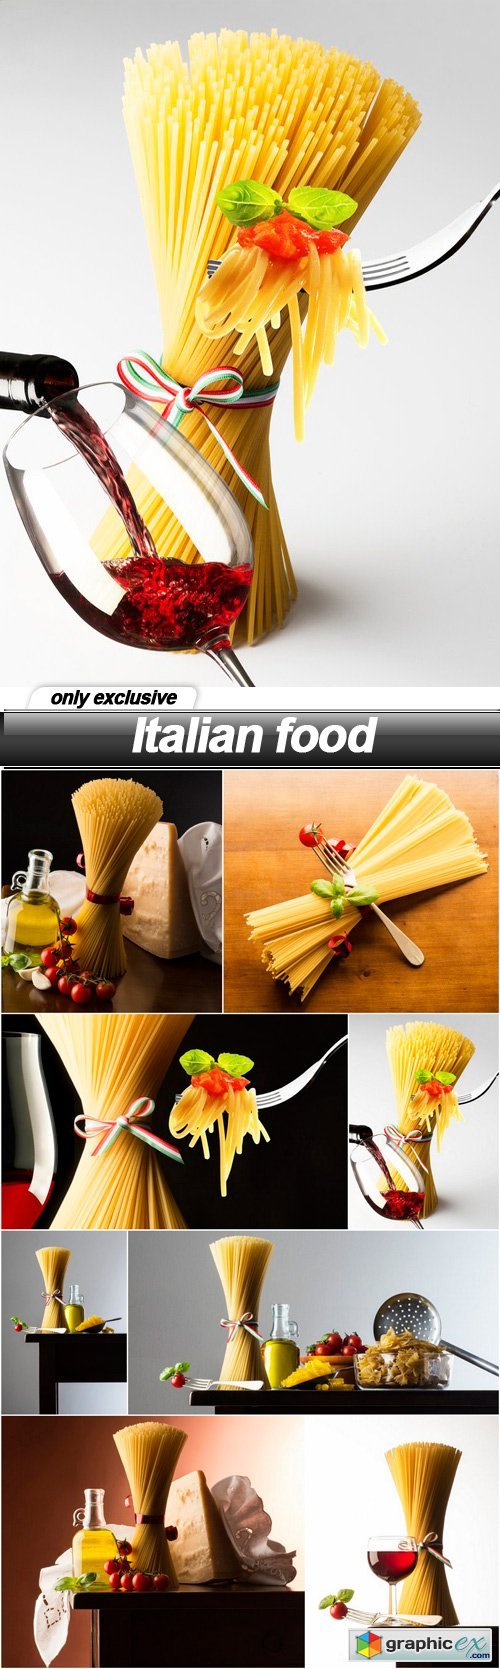 Italian food - 8 UHQ JPEG